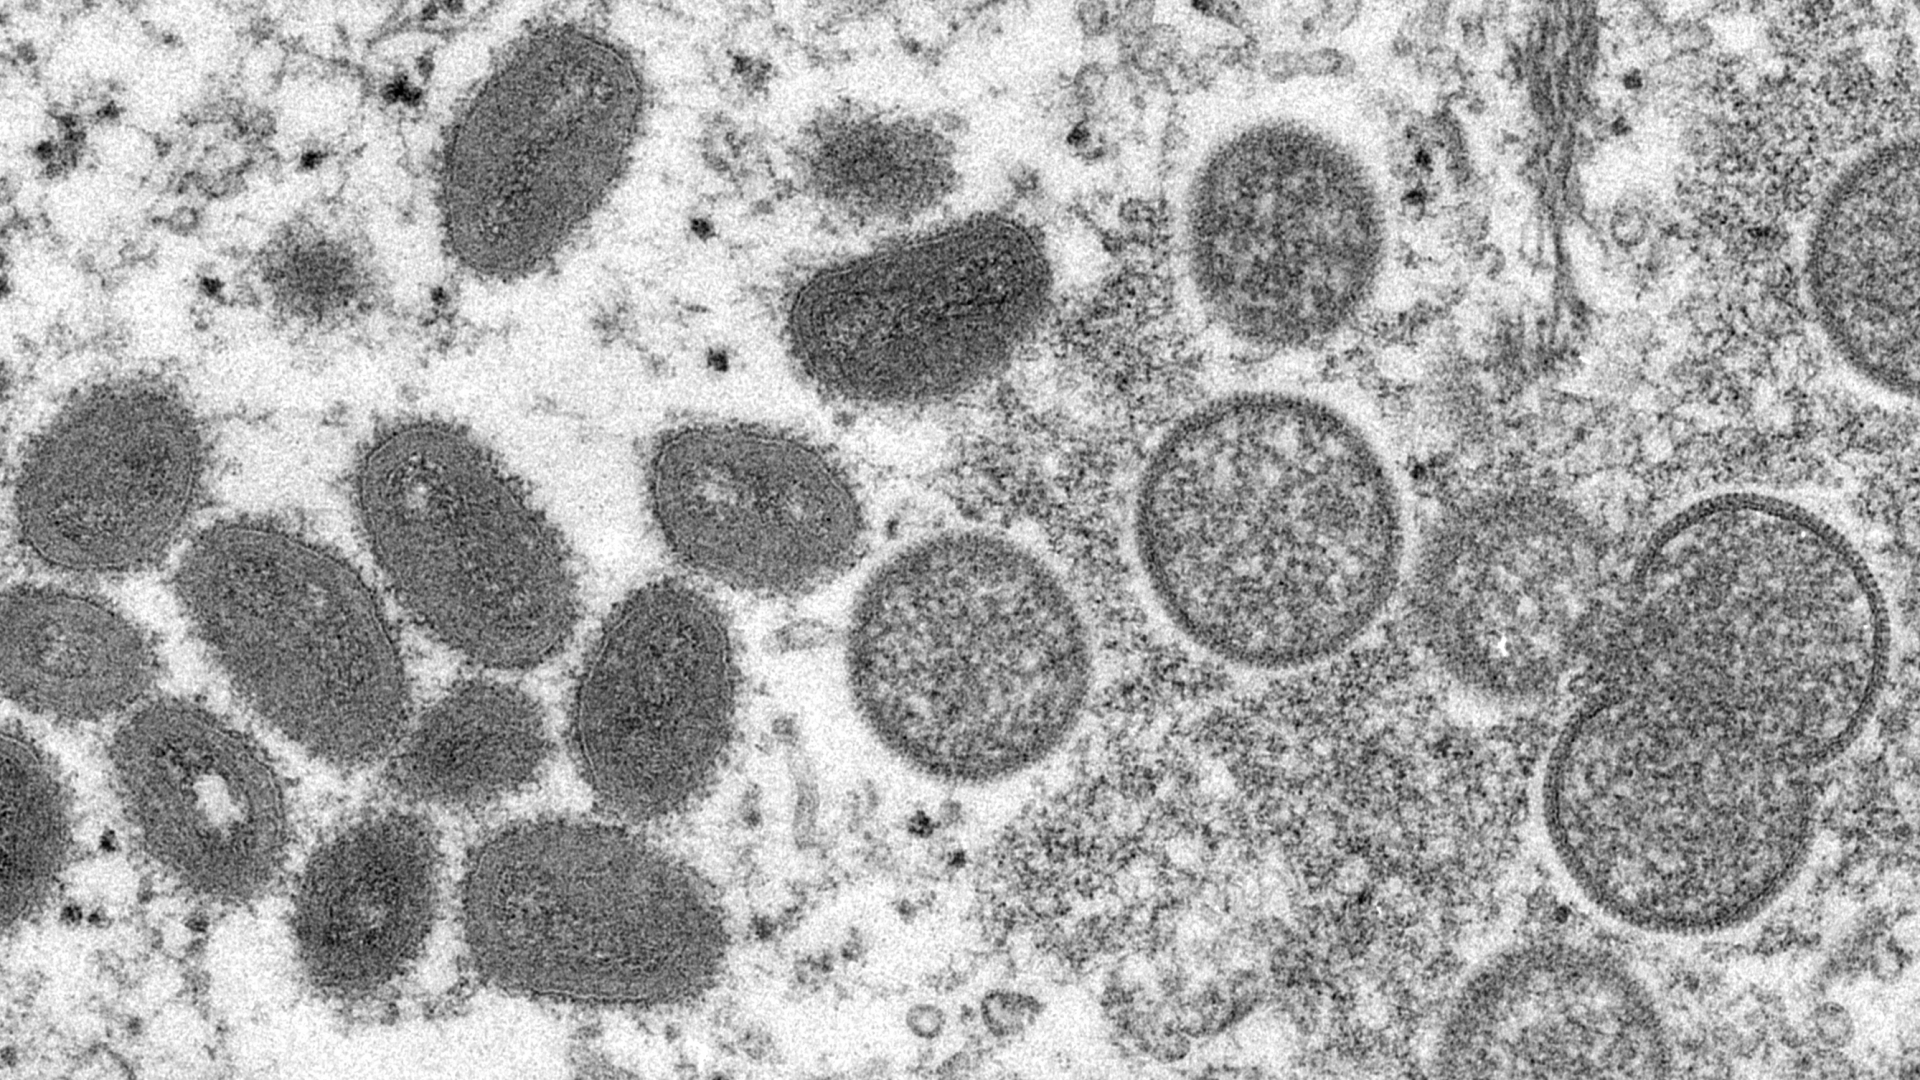 Diese elektronenmikroskopische Aufnahme aus dem Jahr 2003, die von den Centers for Disease Control and Prevention zur Verfügung gestellt wurde, zeigt reife, ovale Affenpockenviren (l) und kugelförmige unreife Virionen (r), die aus einer menschlichen Hautprobe im Zusammenhang mit dem Präriehundeausbruch von 2003 stammt (Archivbild). | dpa